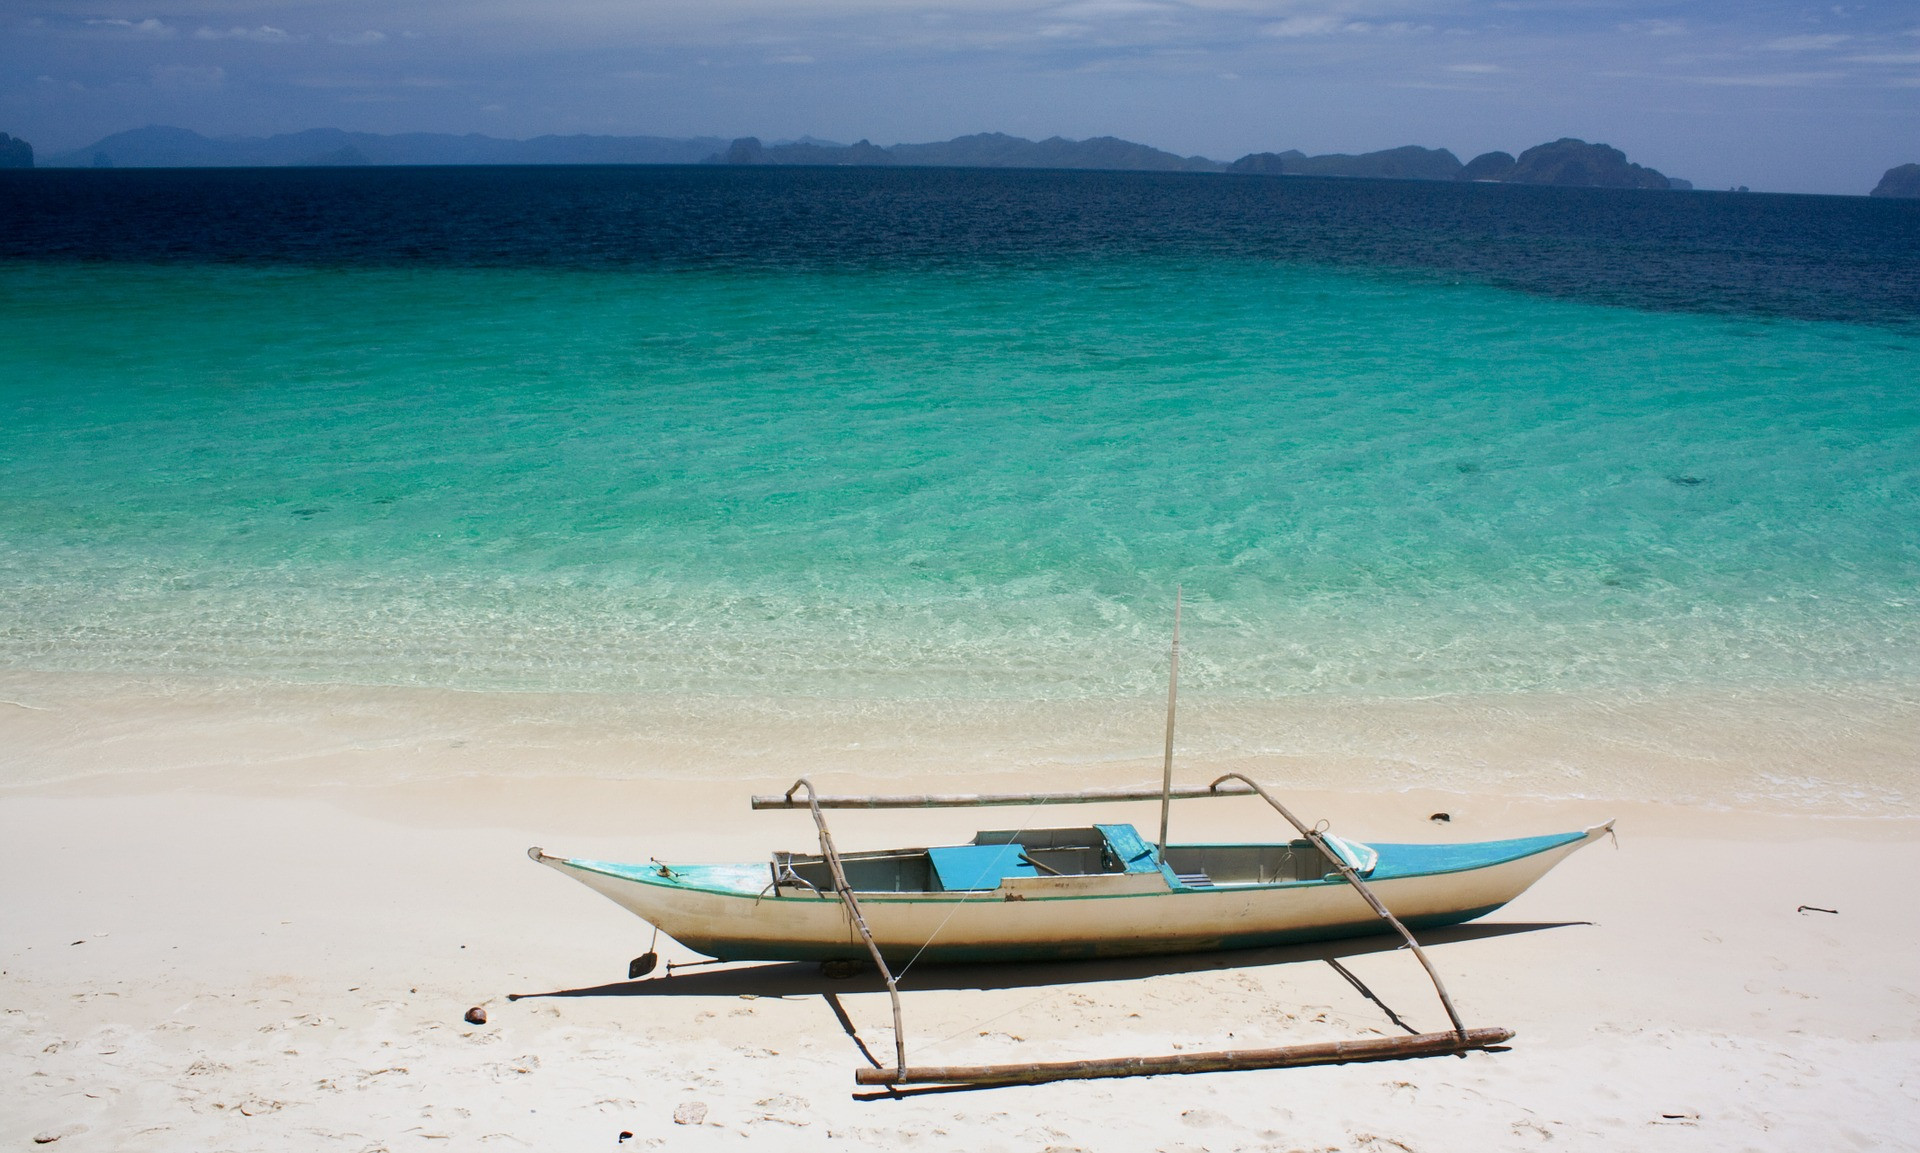 Výhodou tohto súostrovia je, že ešte stále nie je medzi turistami také obľúbené. Pritom sa tu môžete plaviť na kajaku, potápať s mierumilovnými žralokmi obrovskými, prechádzať po ryžových poliach alebo pozorovať okále filipínske. Nádherné pláže sú potom skvelým bonusom.